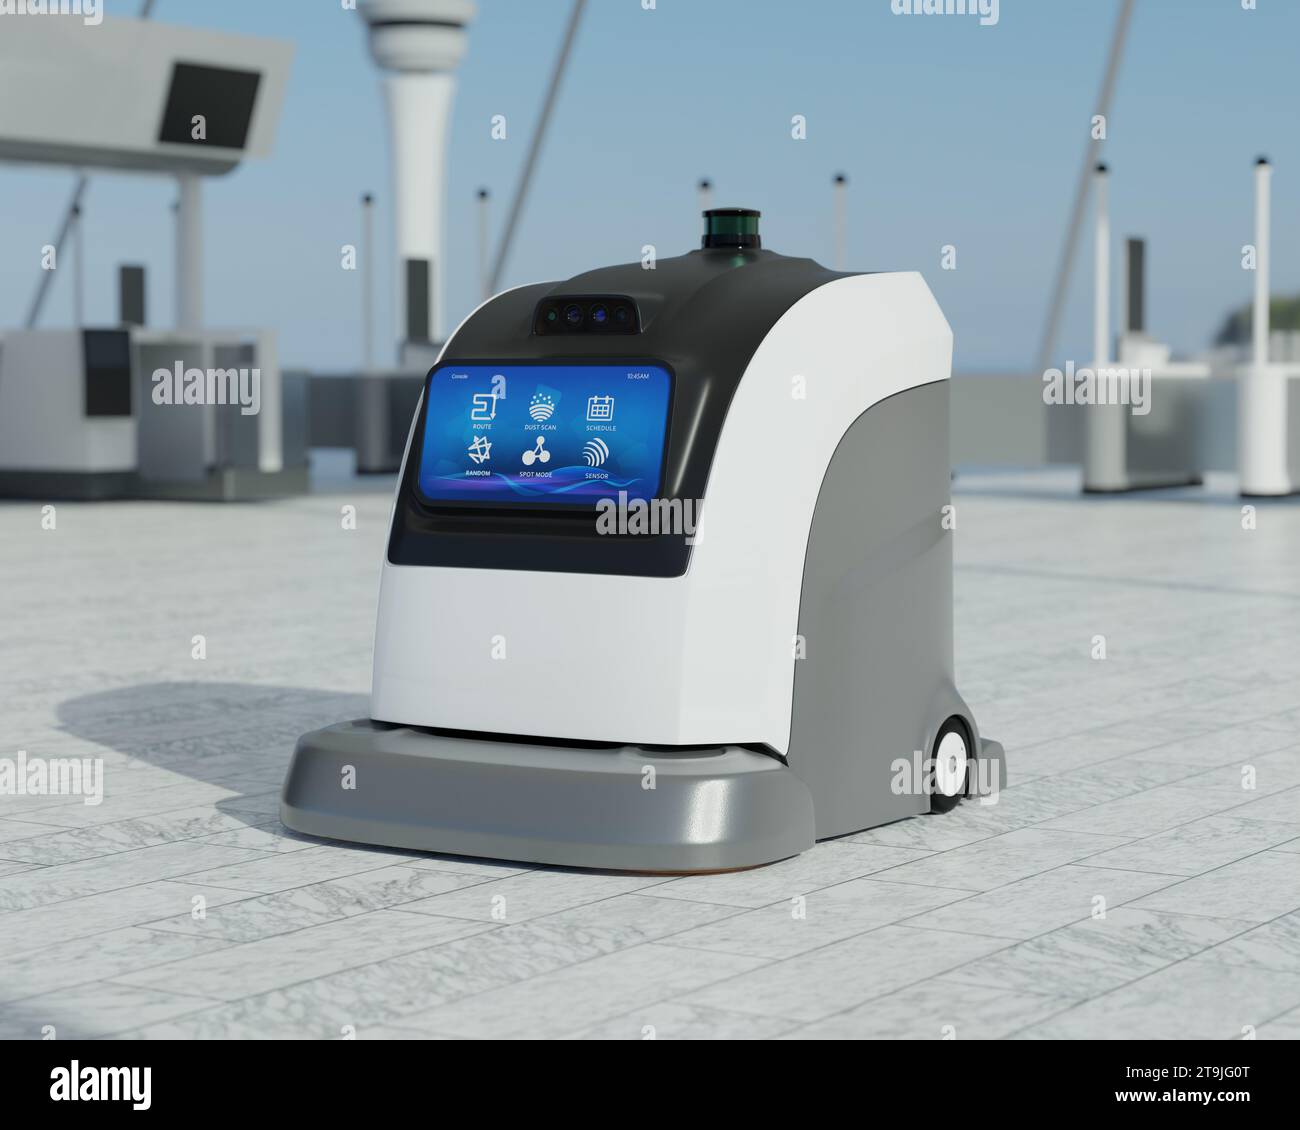 Robots nettoyeurs autonomes nettoyage du sol dans l'aéroport. Conception générique. Image de rendu 3D. Banque D'Images